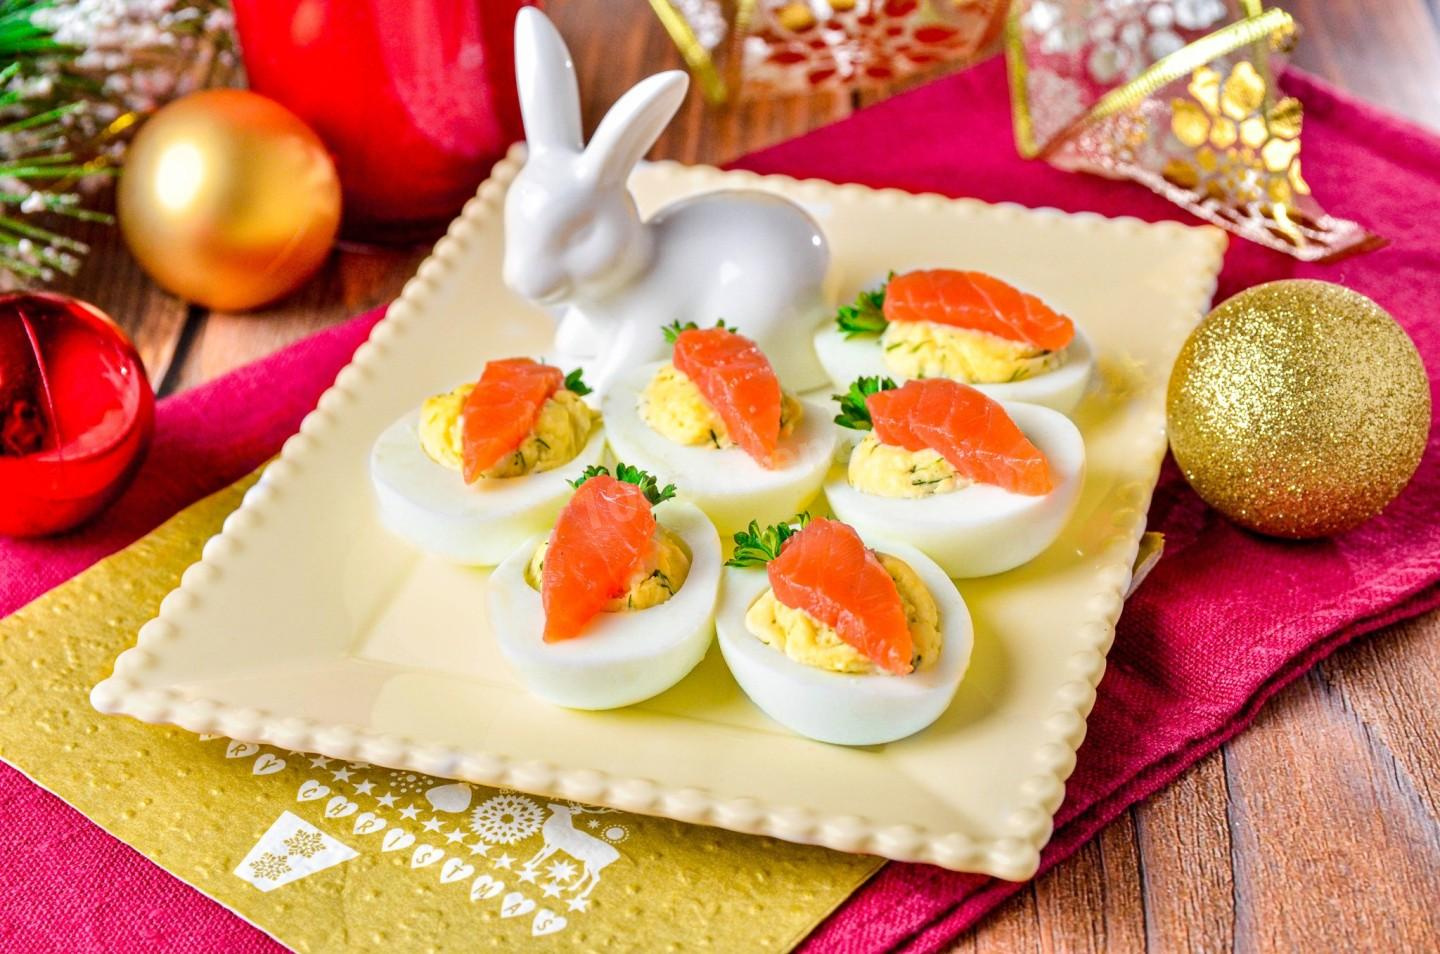 Очень простые и легкие закуски можно сделать из яиц. Например, для таких «морковных горок» надо сварить яйца, желток смешать с плавленым сыром и начинить им белок. Сверху положите кусочек красной рыбы, вырезанный в виде моркови, и зелень для украшения